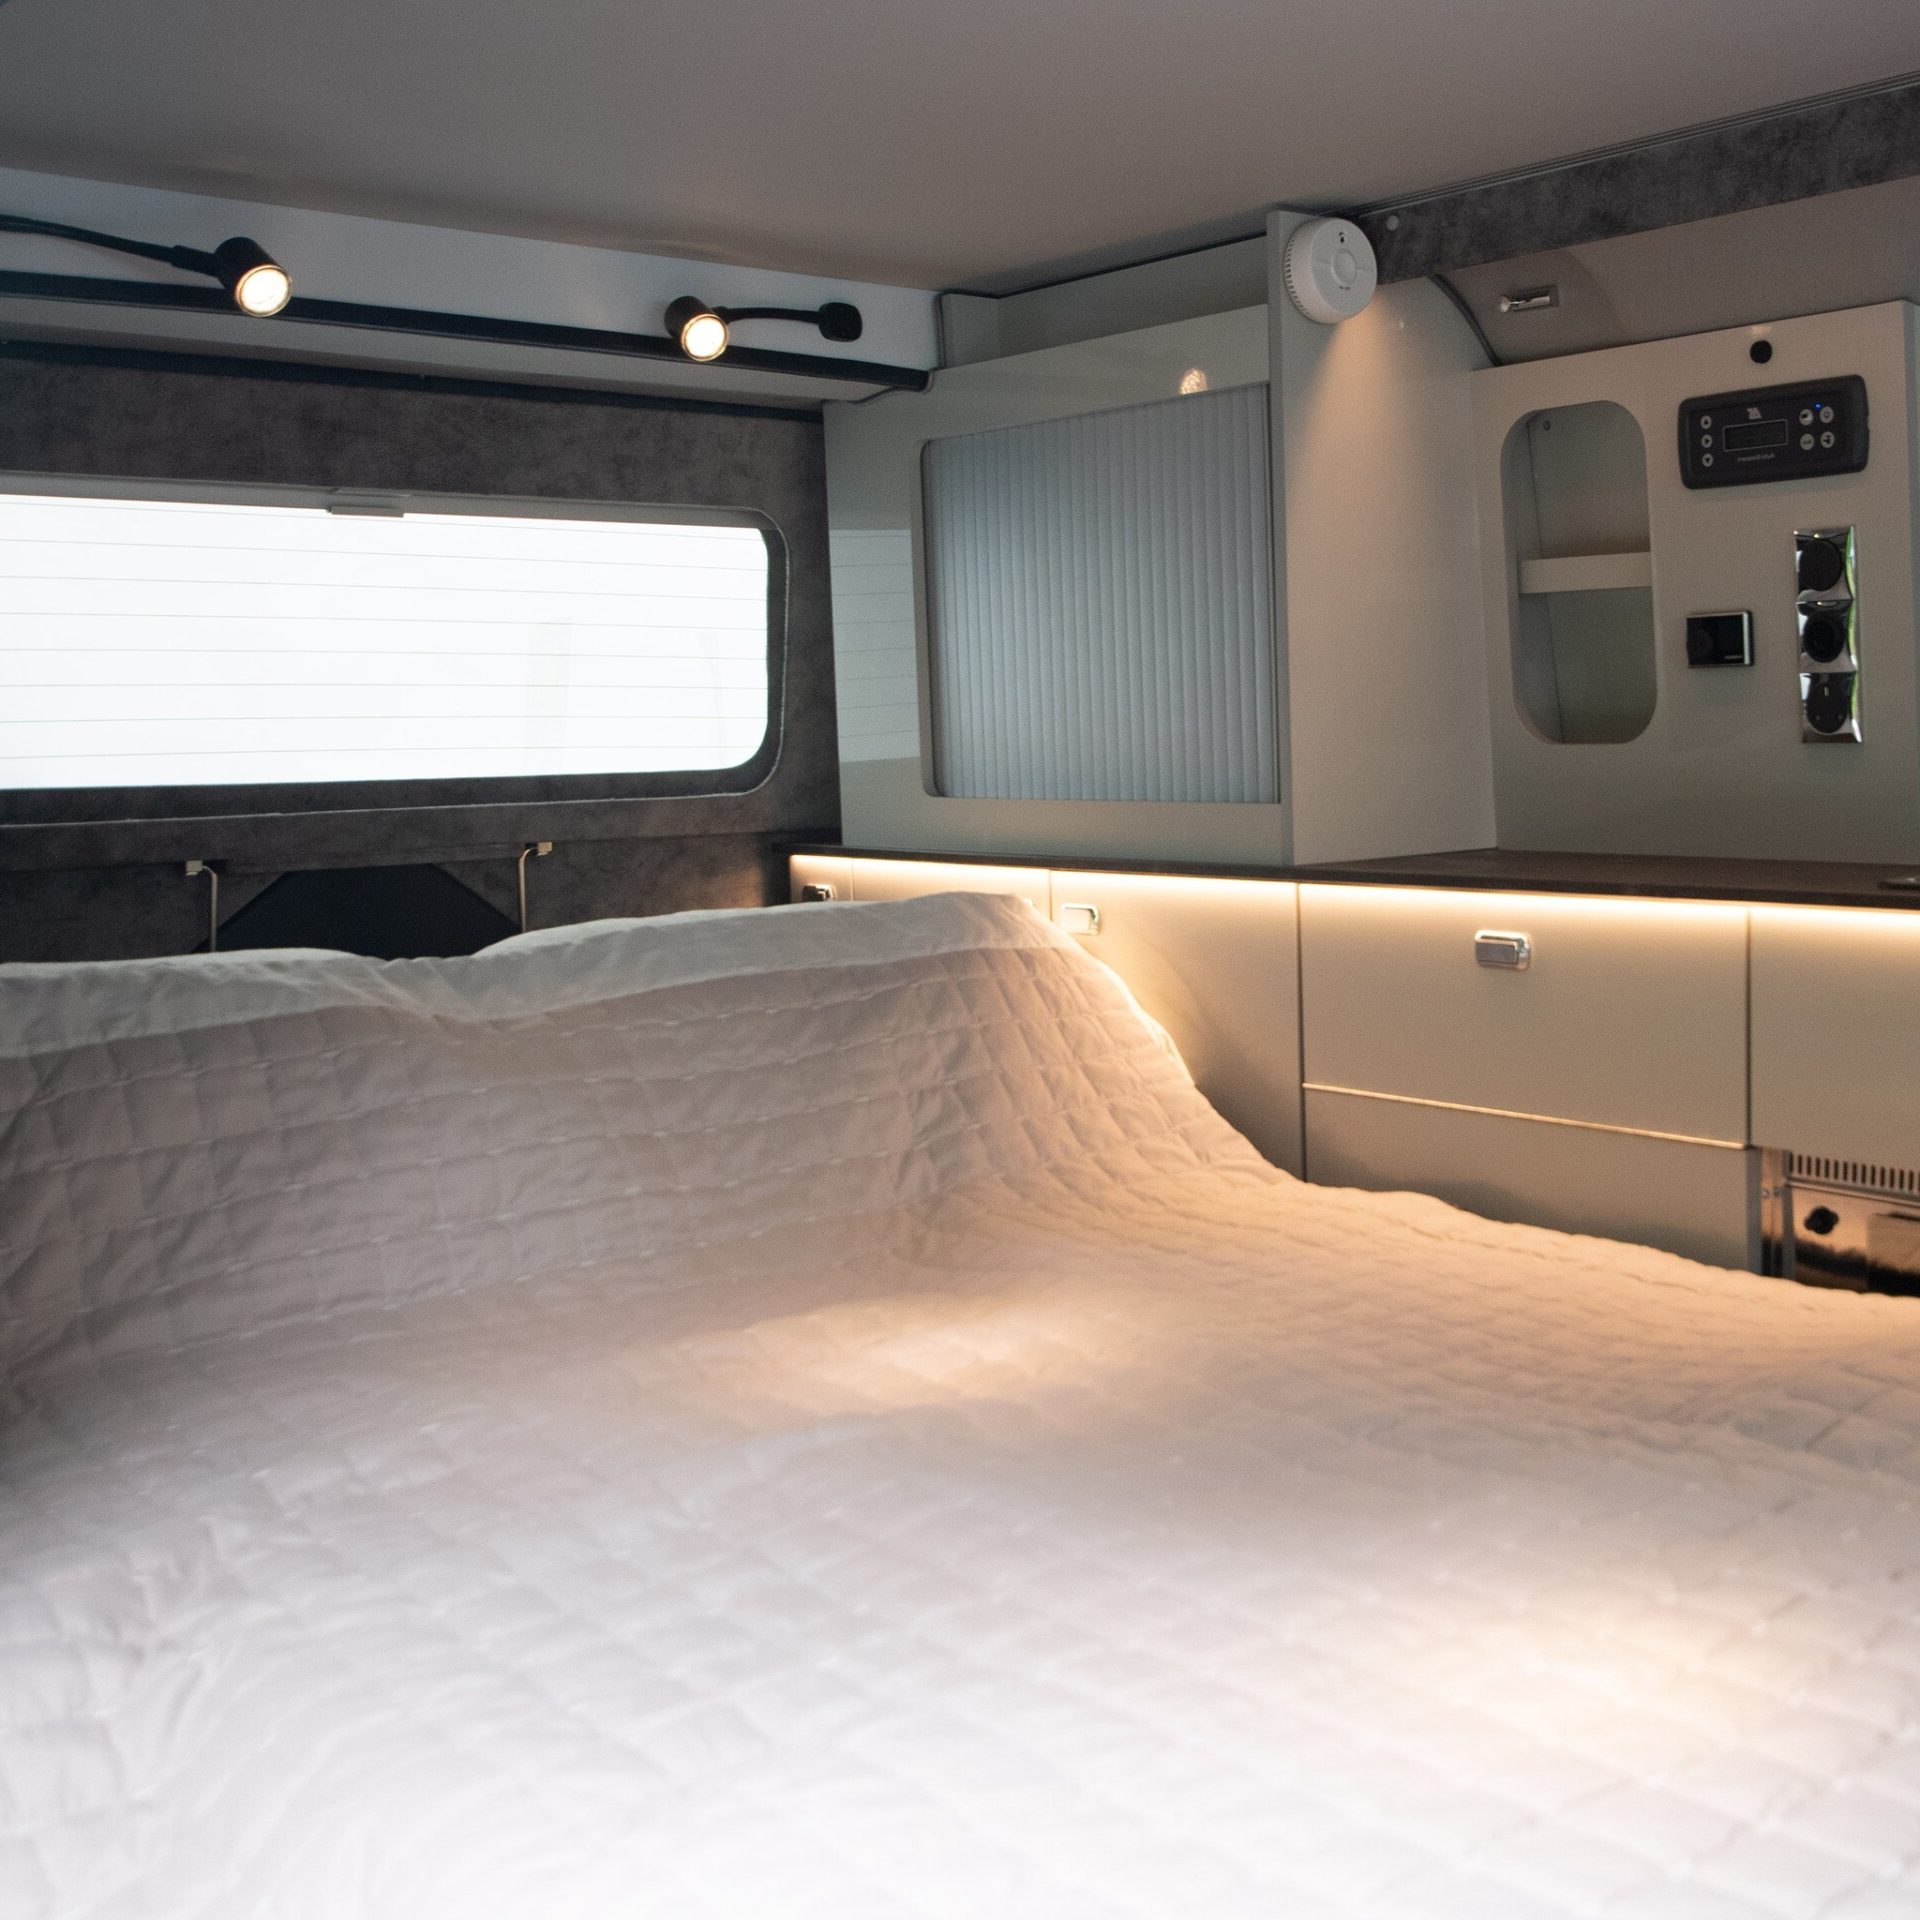 Удостоенный наград Ford Transit Campervan — это все, что нужно современному кочевнику, но есть одна загвоздка